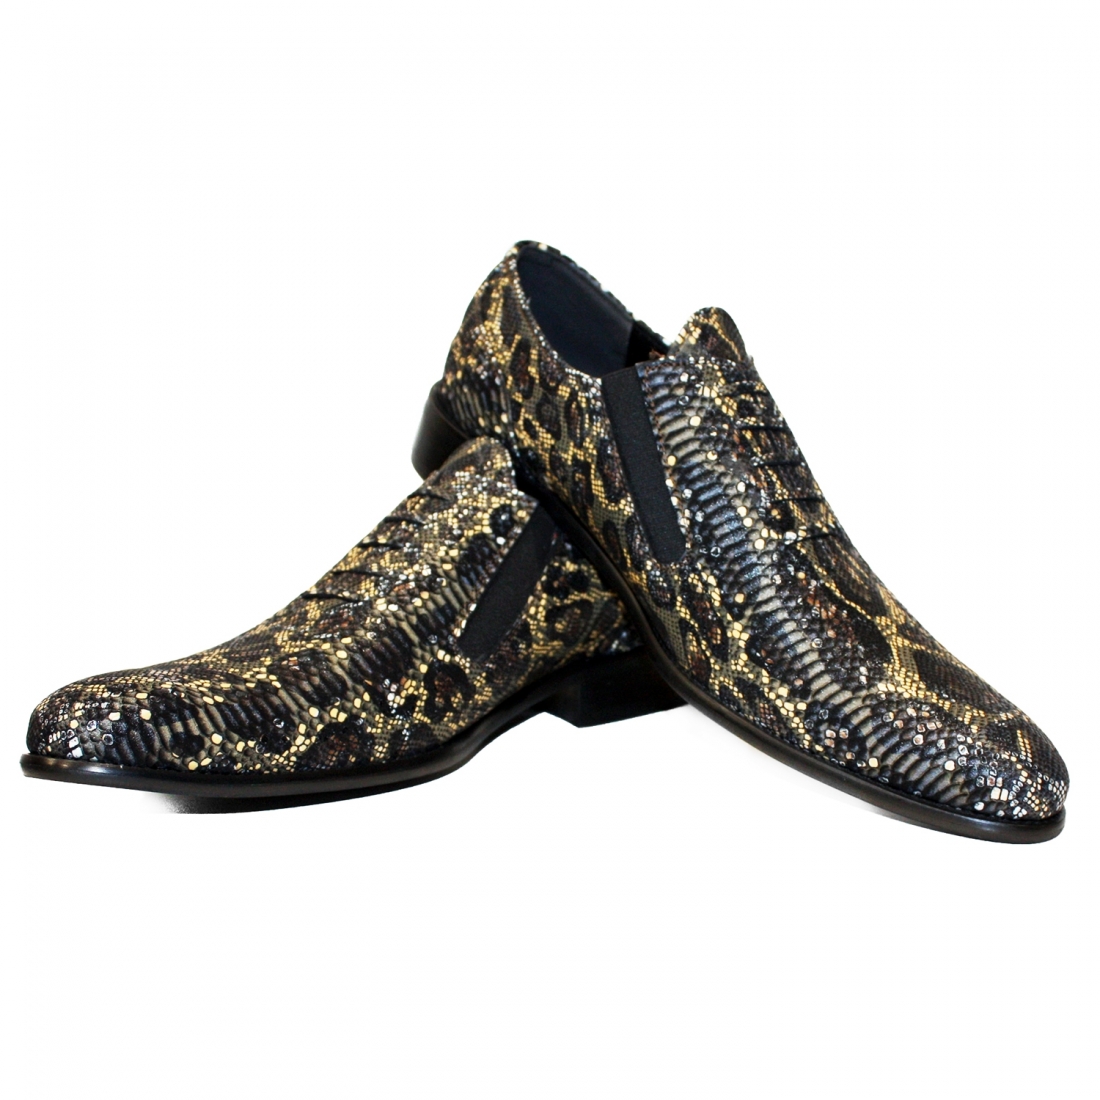 Modello Serpenterro - Mocassini - Handmade Colorful Italian Leather Shoes